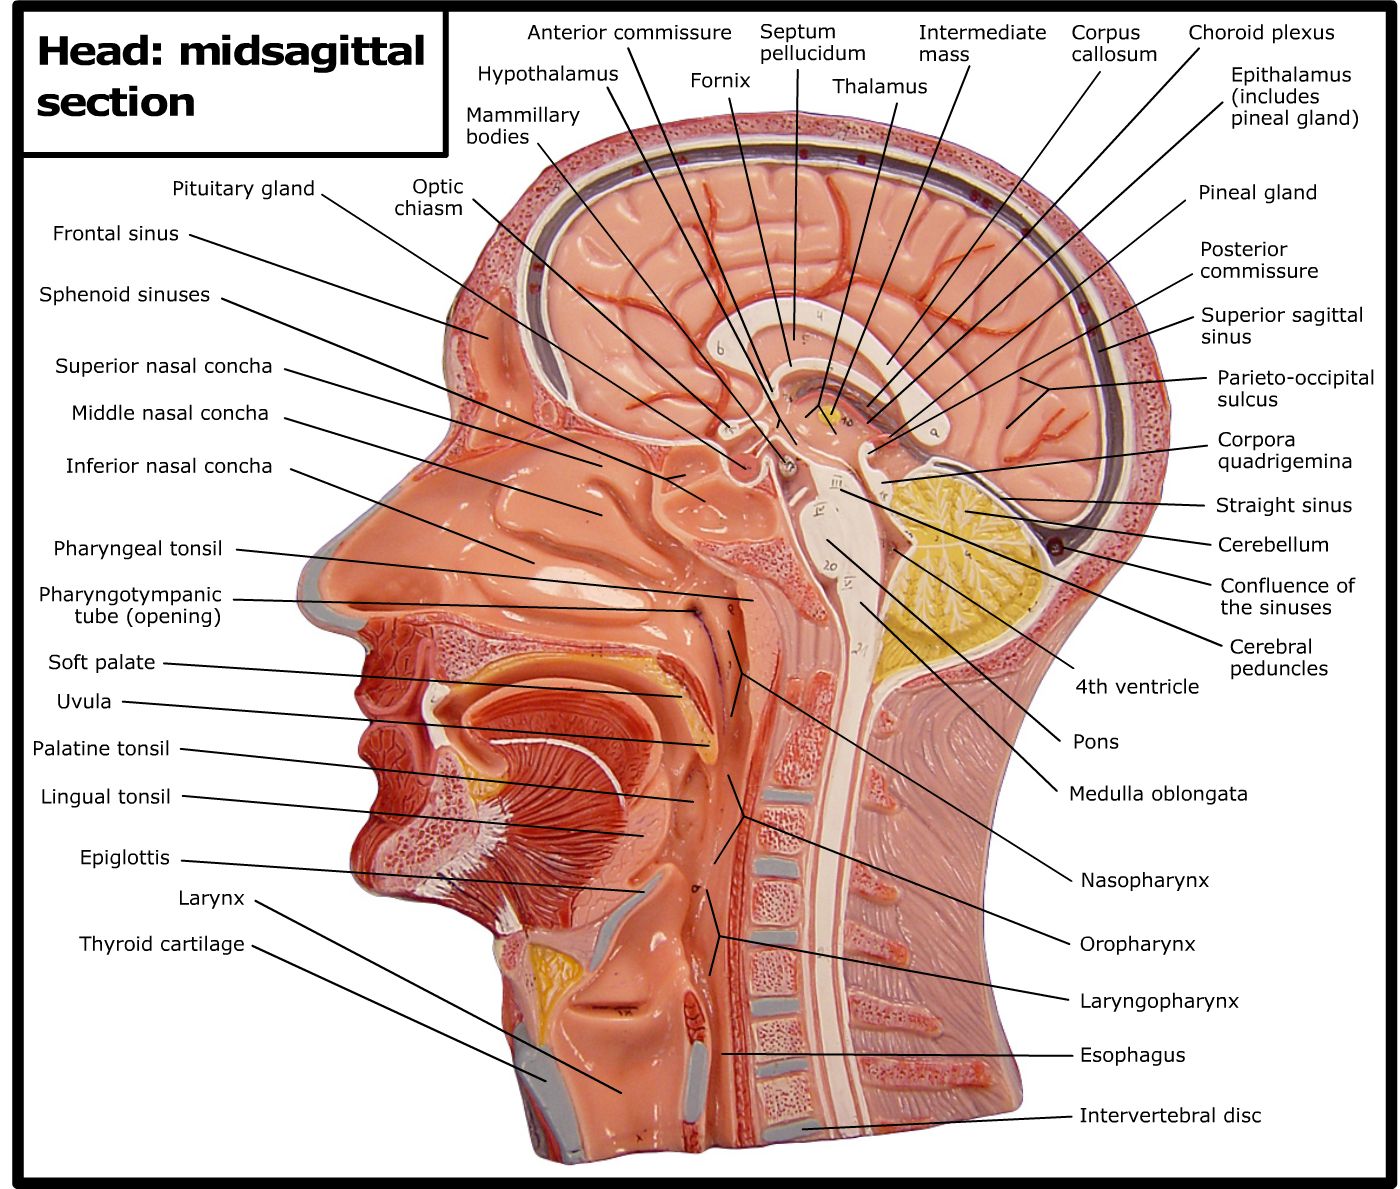 midsagittal plane